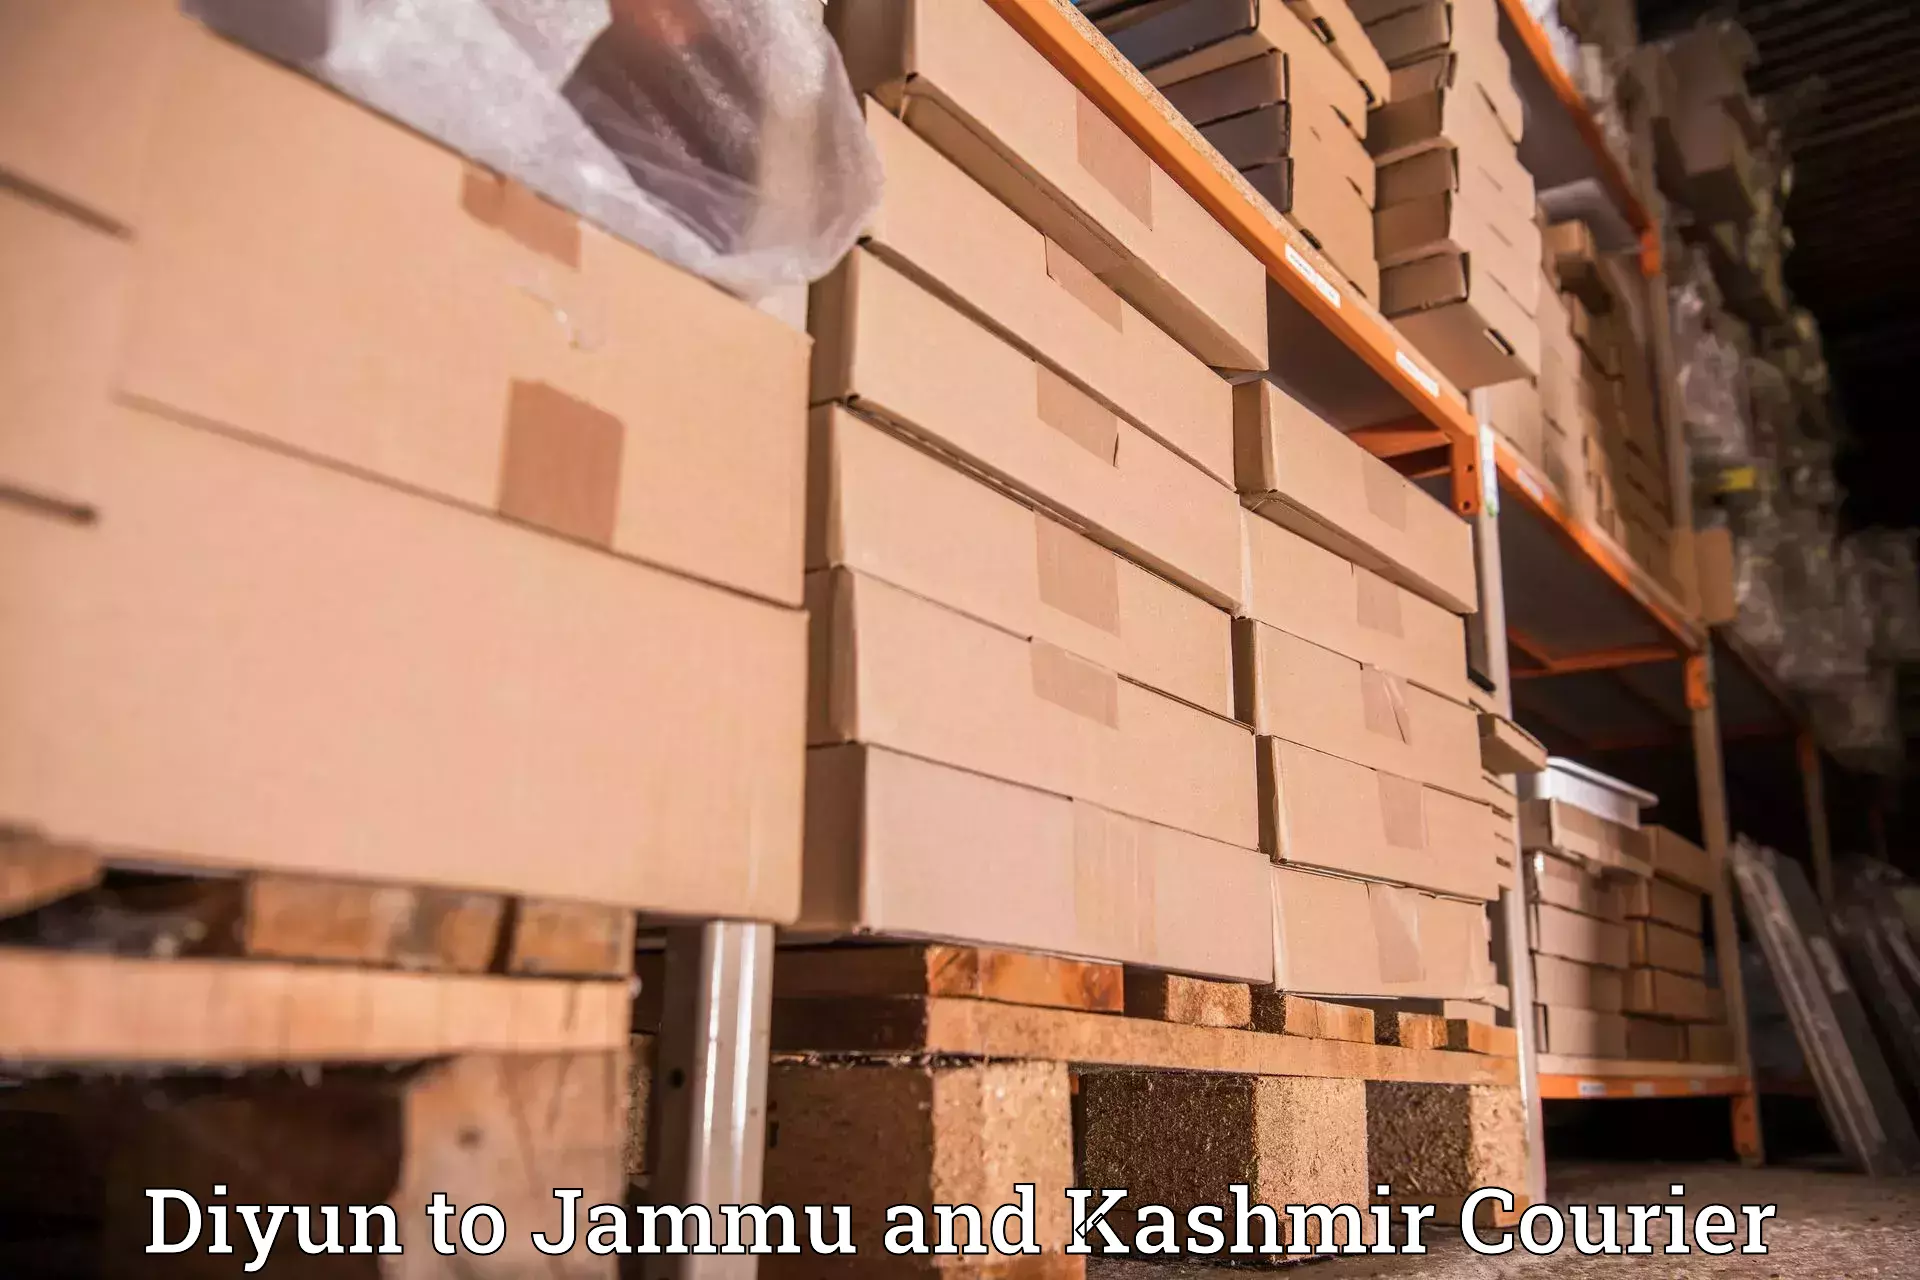 International shipping Diyun to Srinagar Kashmir